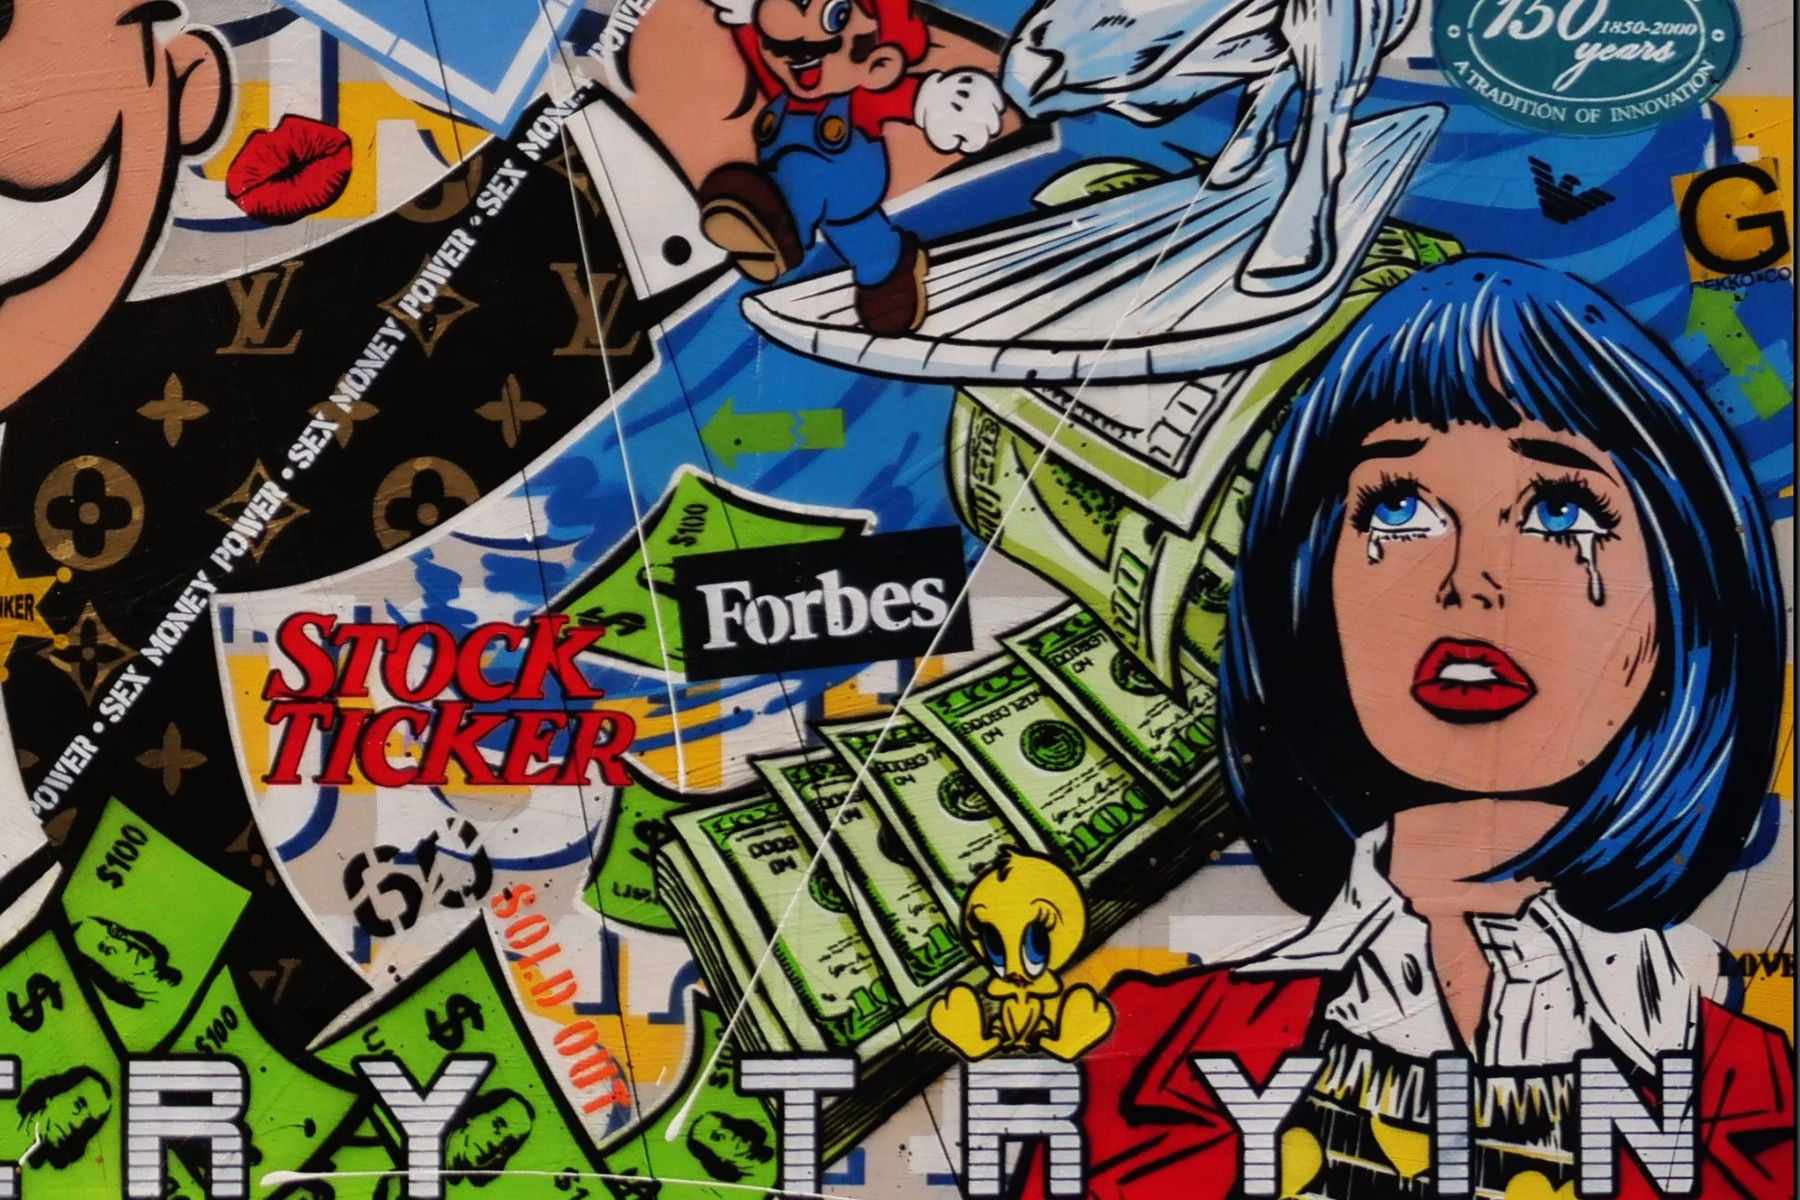 Mr Monopoly Temptation 270cm x 120cm Monopoly Man Textured Urban Pop Art Painting (SOLD)